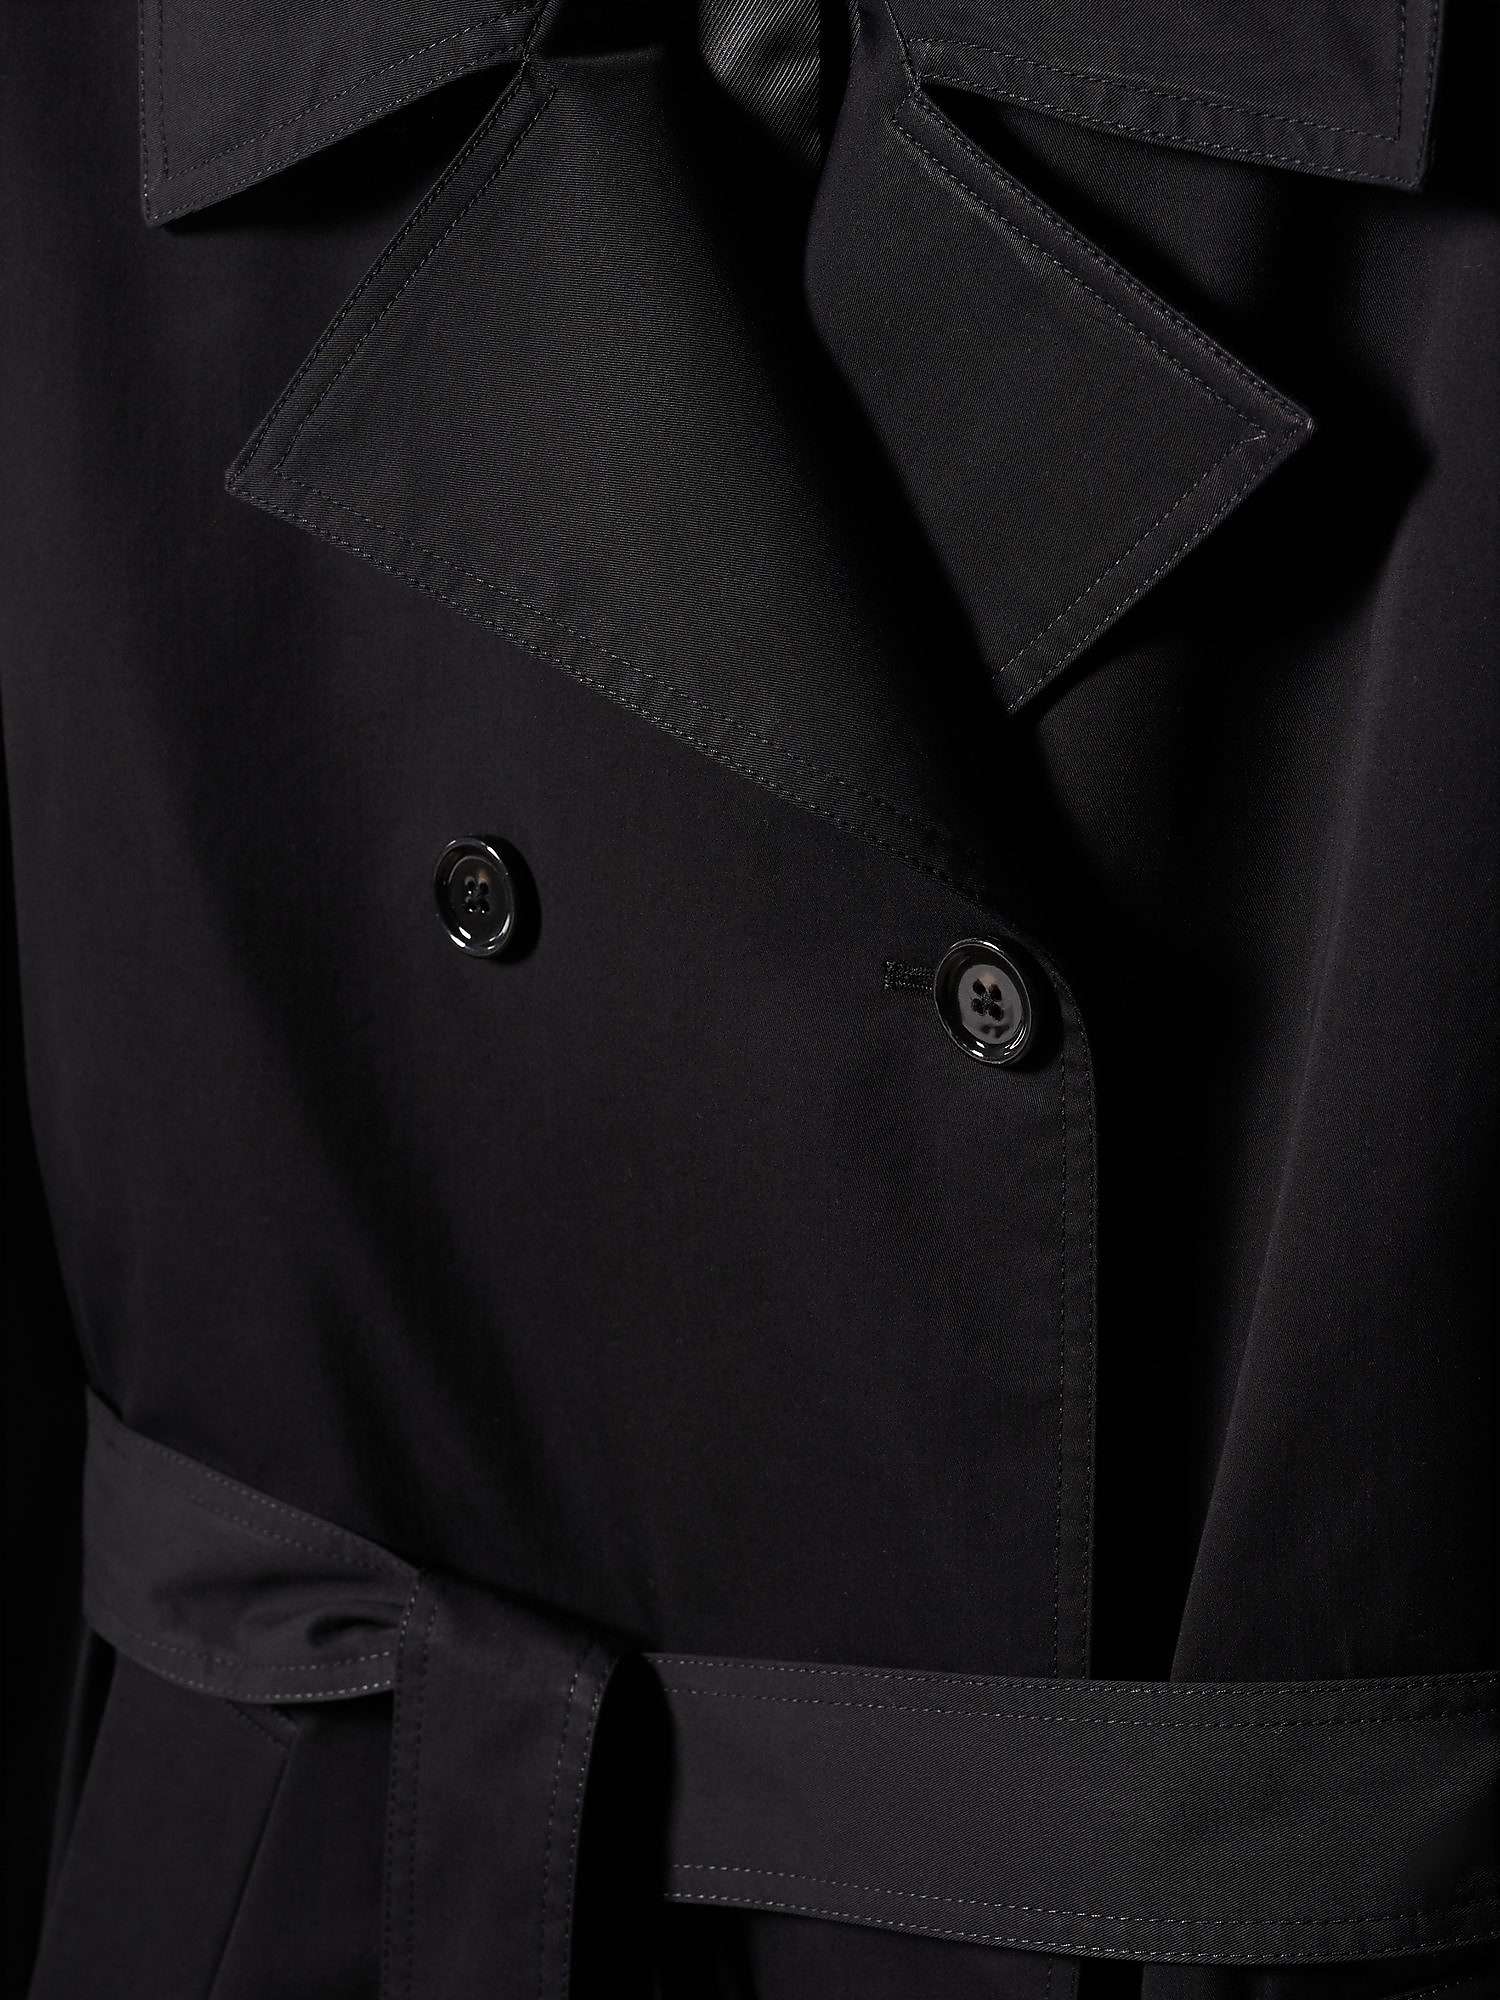 Mango Angela Trench Coat, Black at John Lewis & Partners